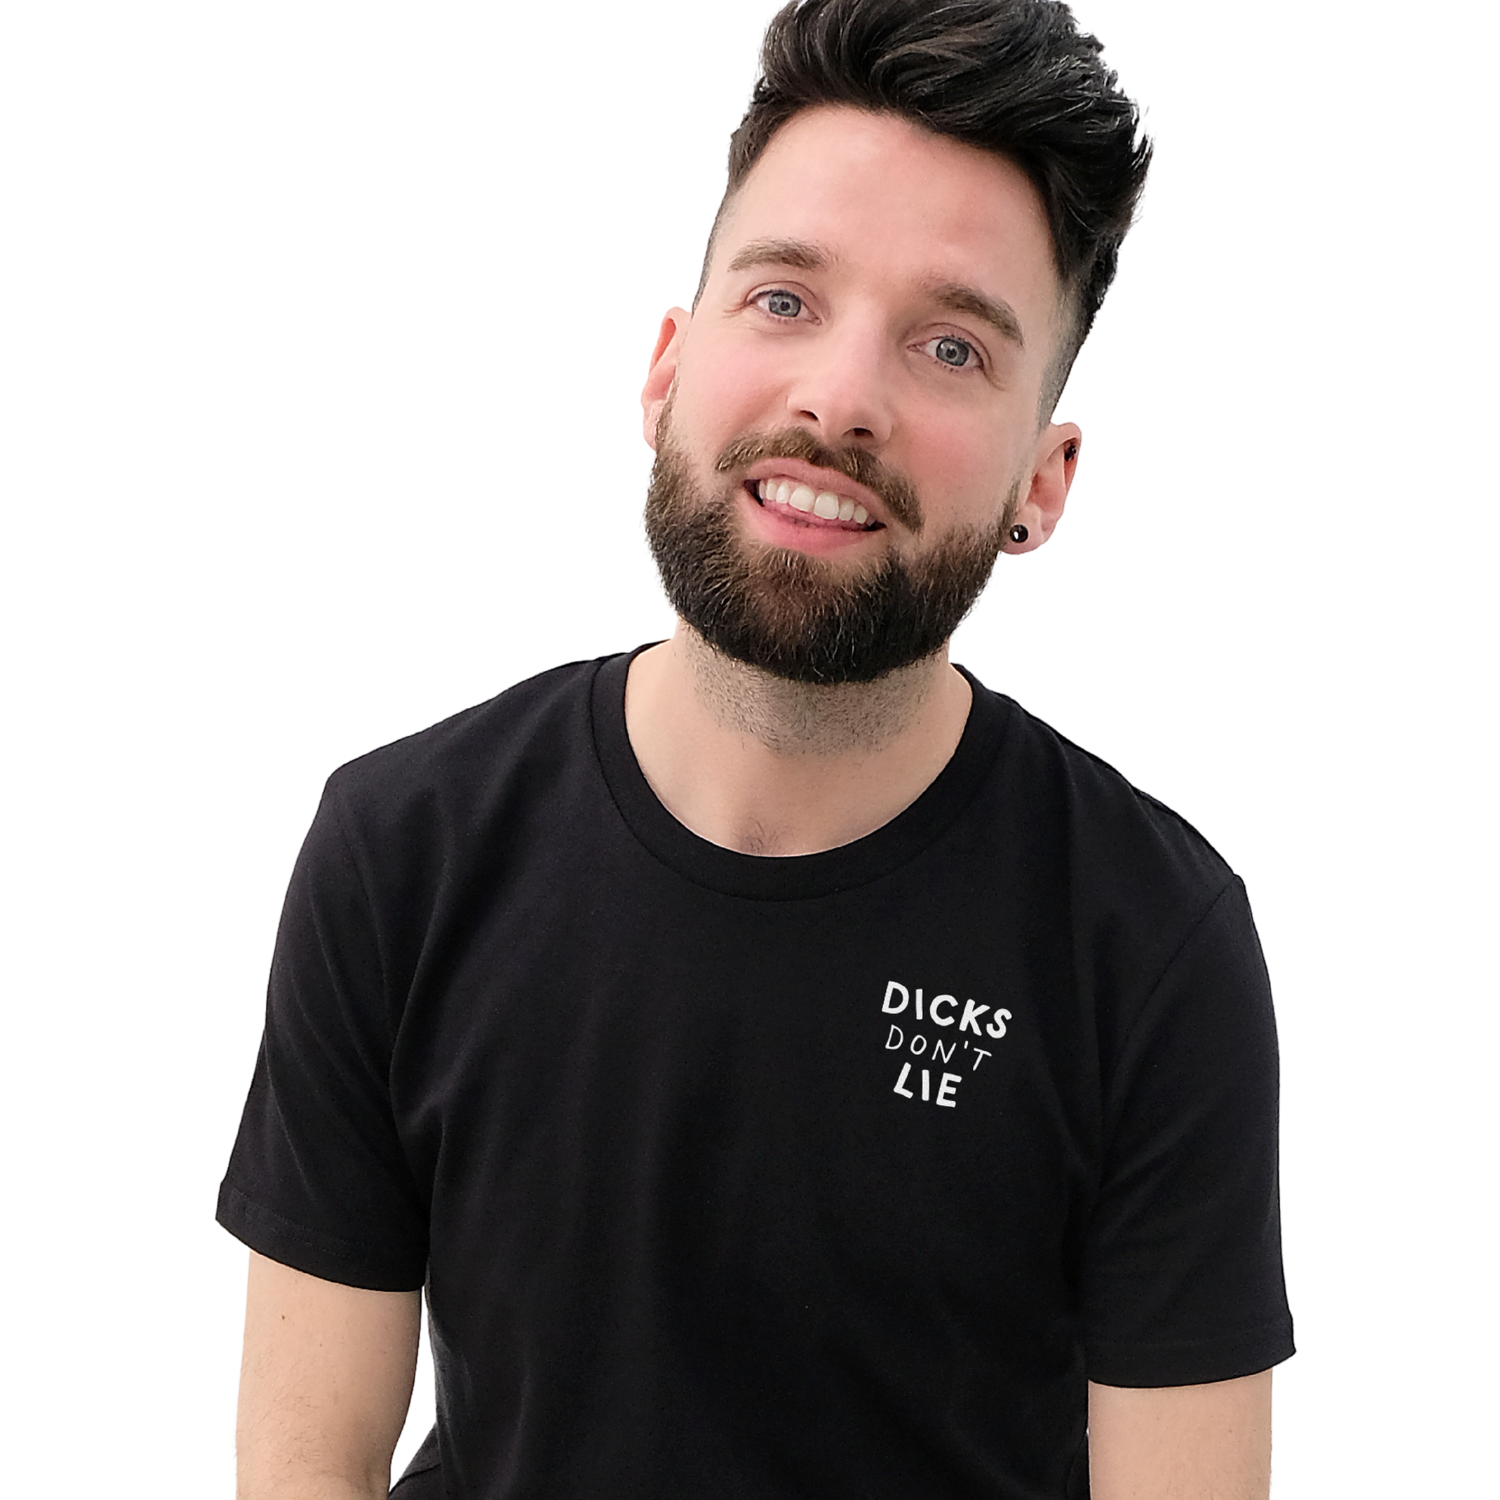 Zwarte Dicks Don't Lie tekst T-shirt van het merk Dicks Don't Lie perfect voor gay mannen en te koop bij Flavourez.